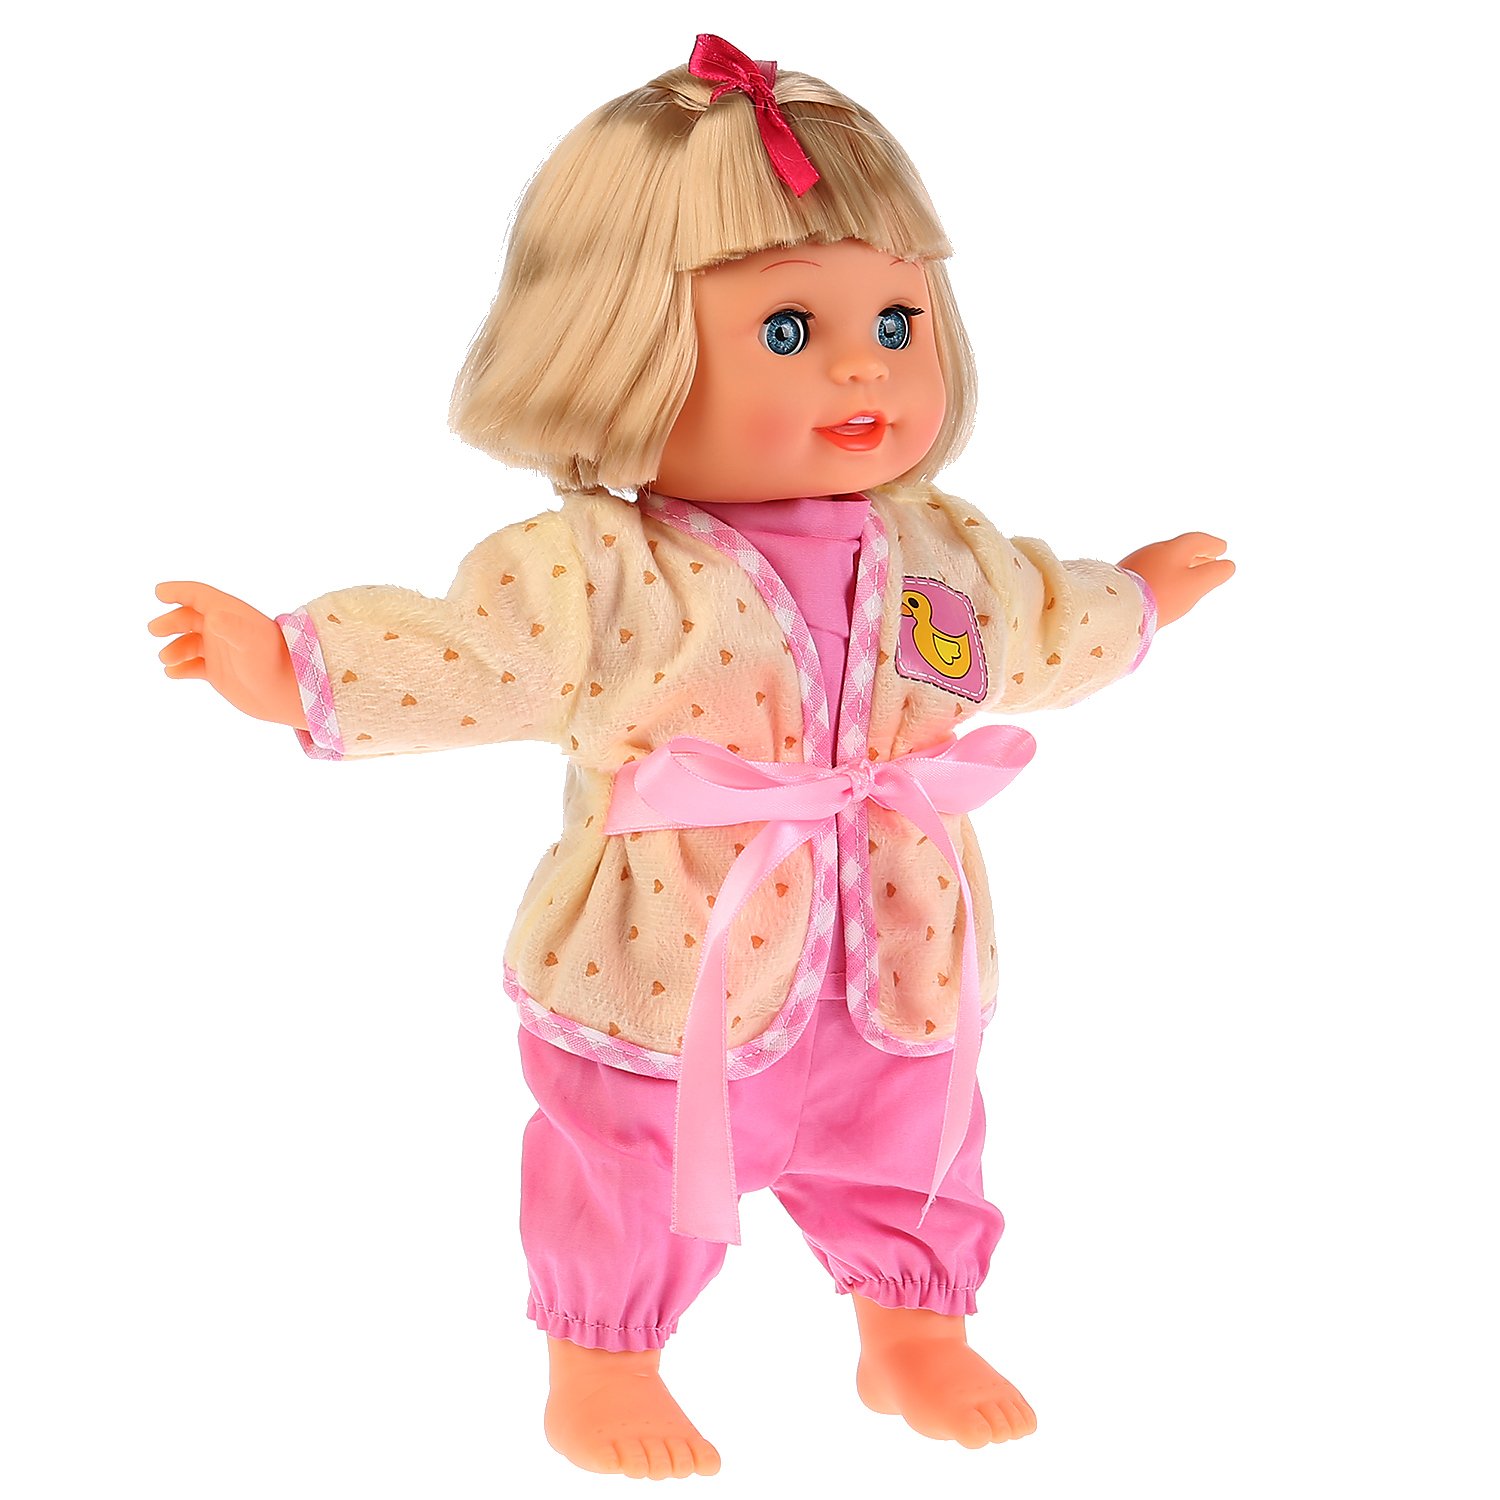 Интерактивная кукла с мягким телом - Леночка, 36 см, 5 функция, 10 песен из м/ф, потешка, чистит зубки  